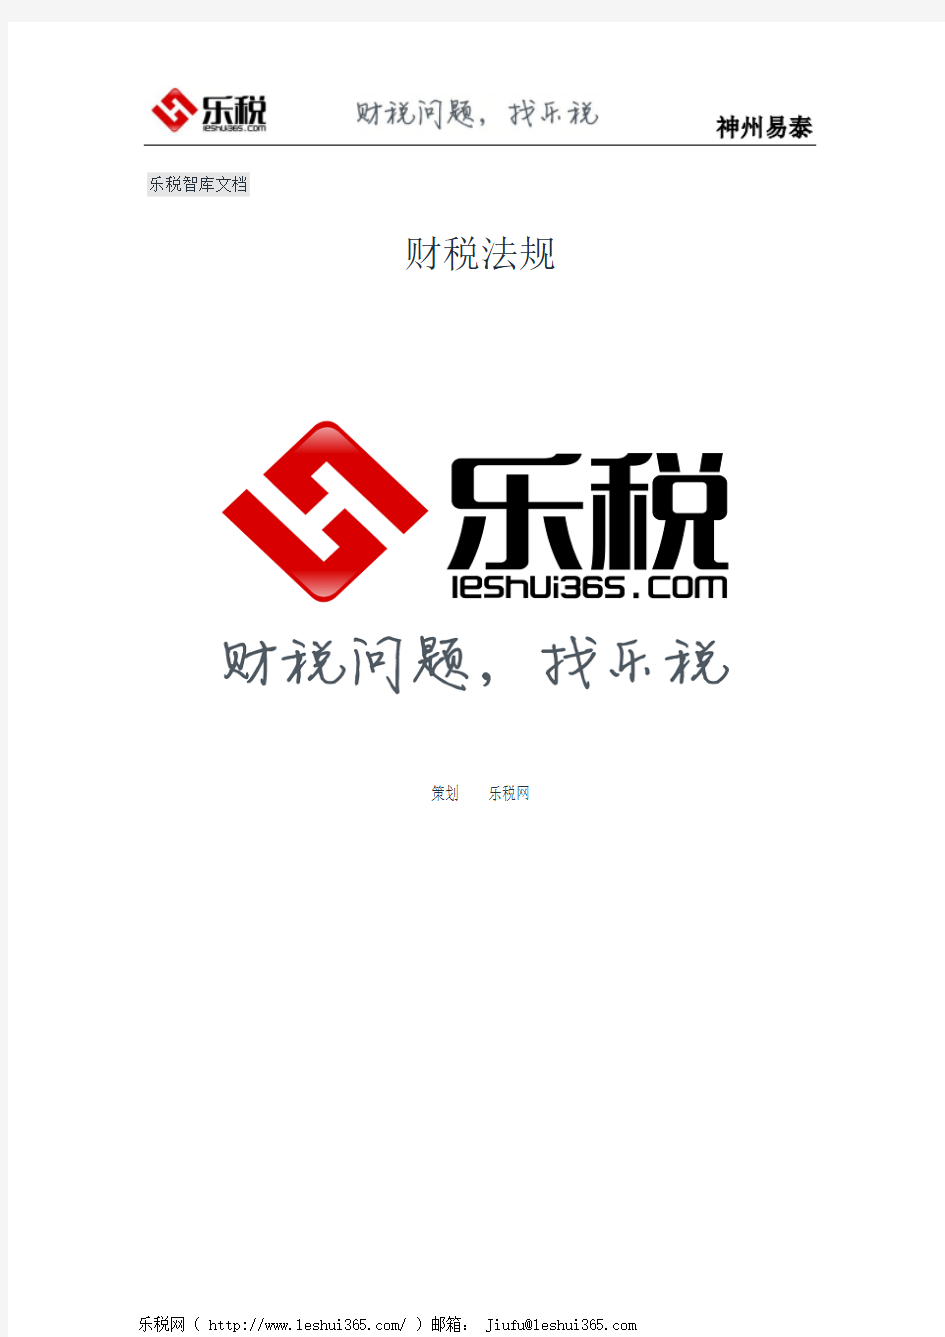 河南省国家税务局关于发布《河南省国家税务局企业所得税汇总纳税